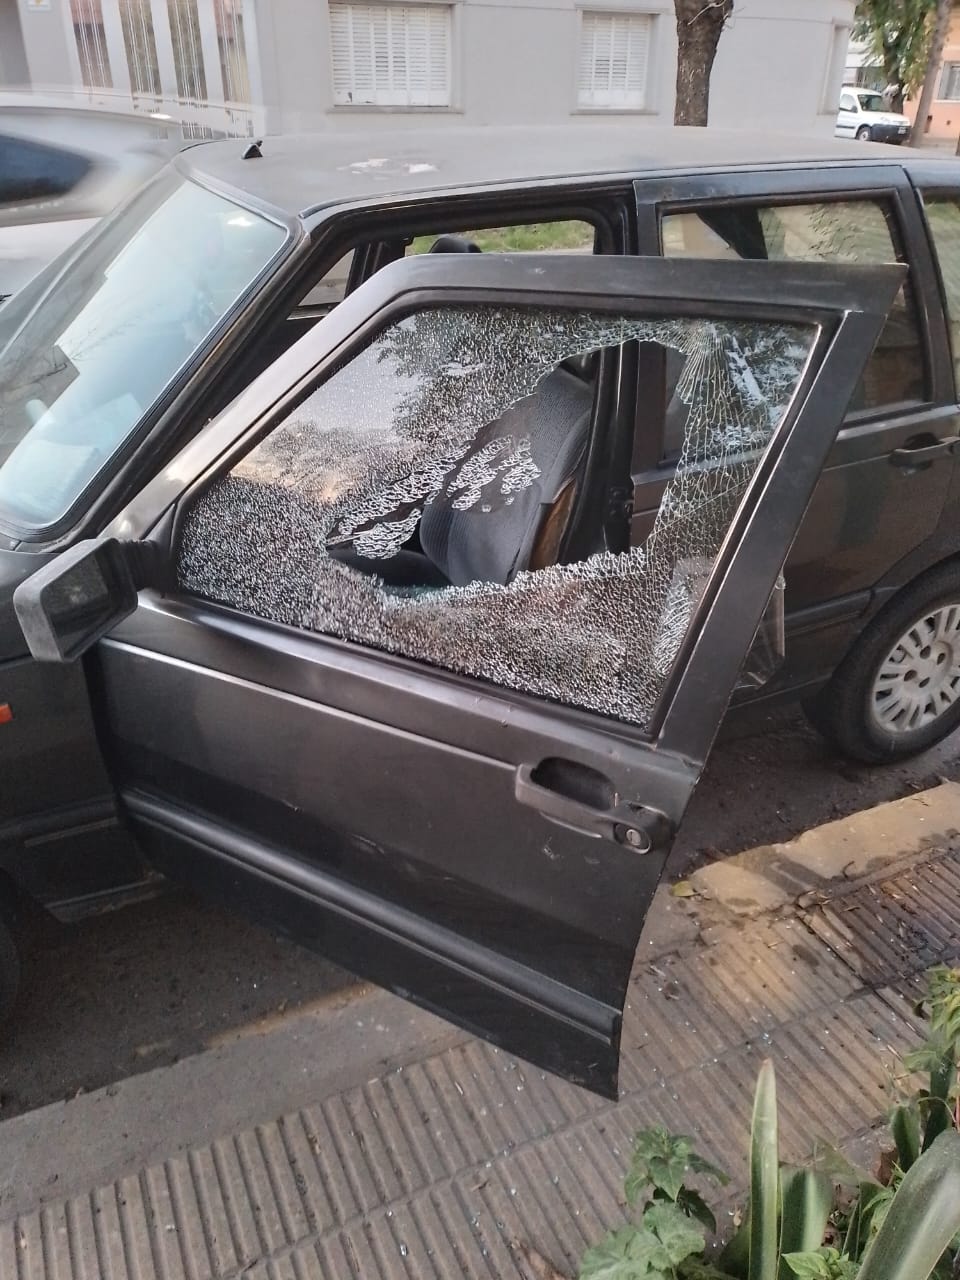 Una pareja joven rompió la ventanilla y puerta de un auto para llevarse una campera